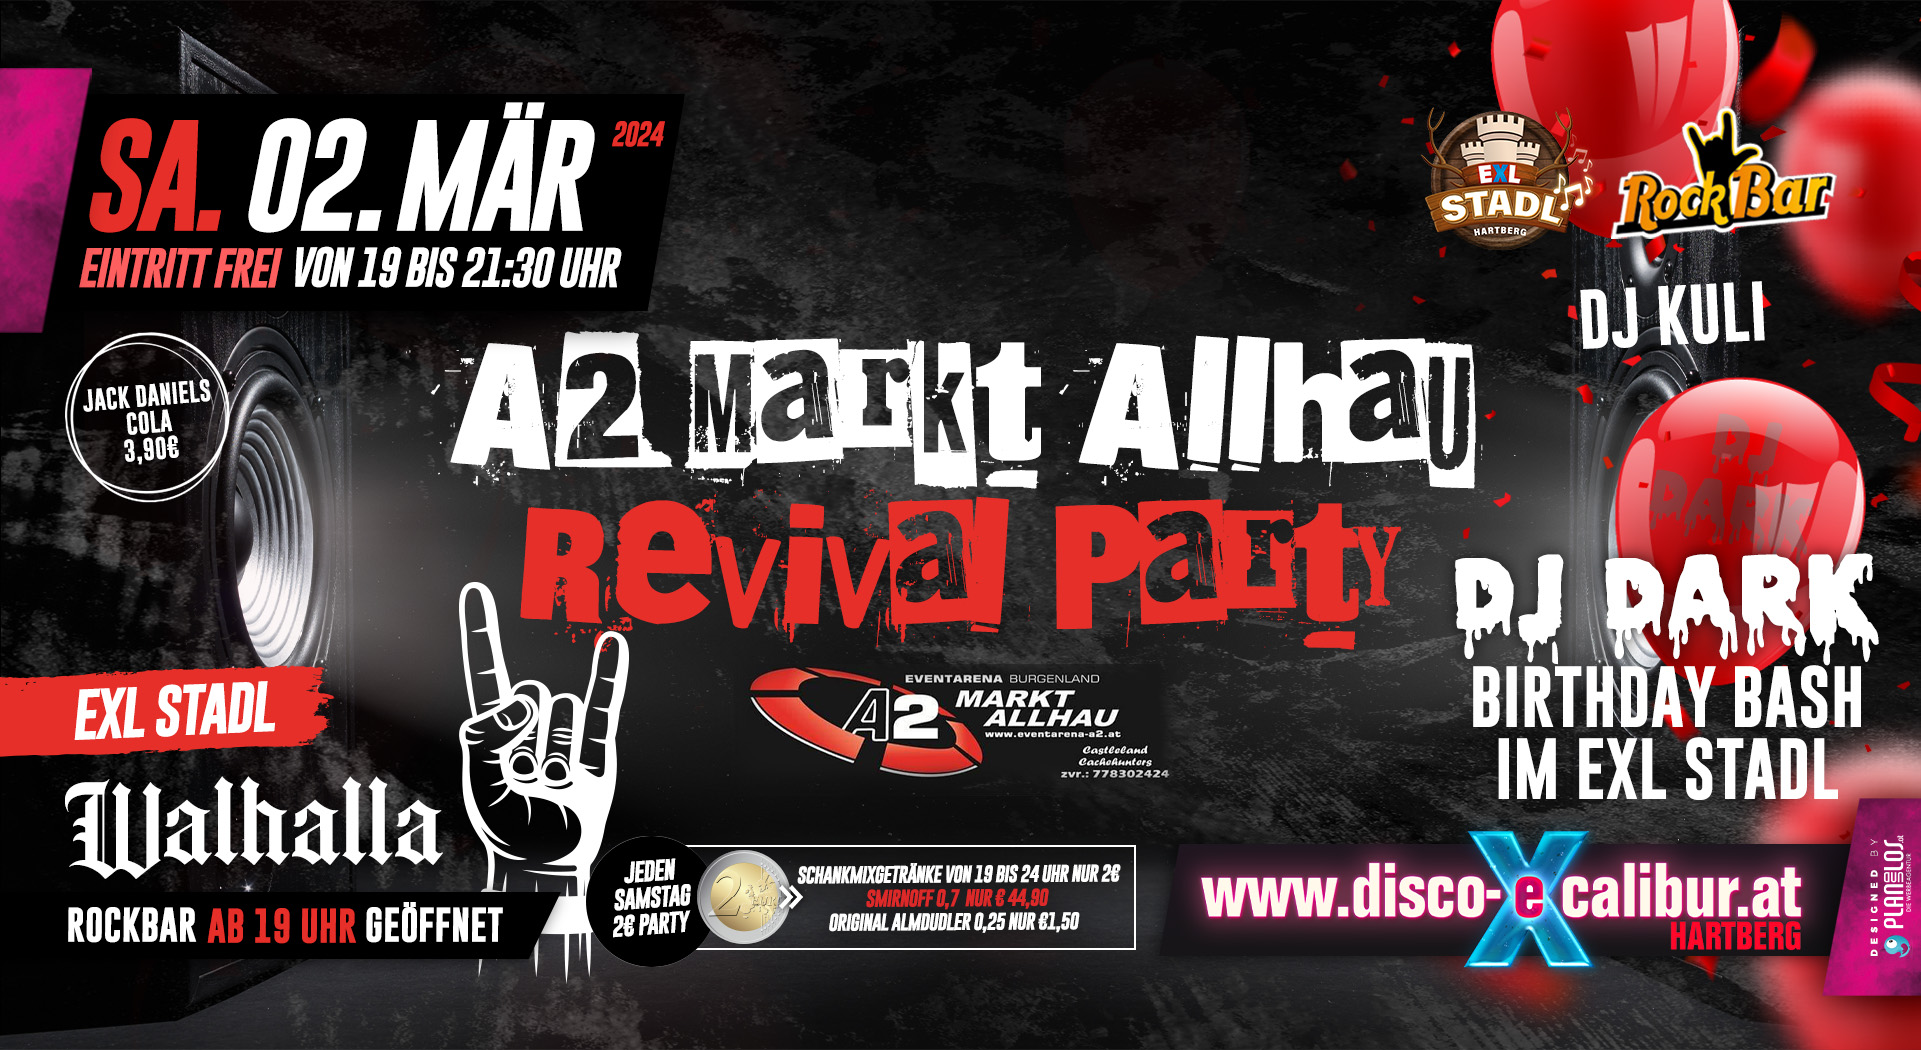 A2 Markt Allhau Revival Party + DJ DARK Birthday Bash